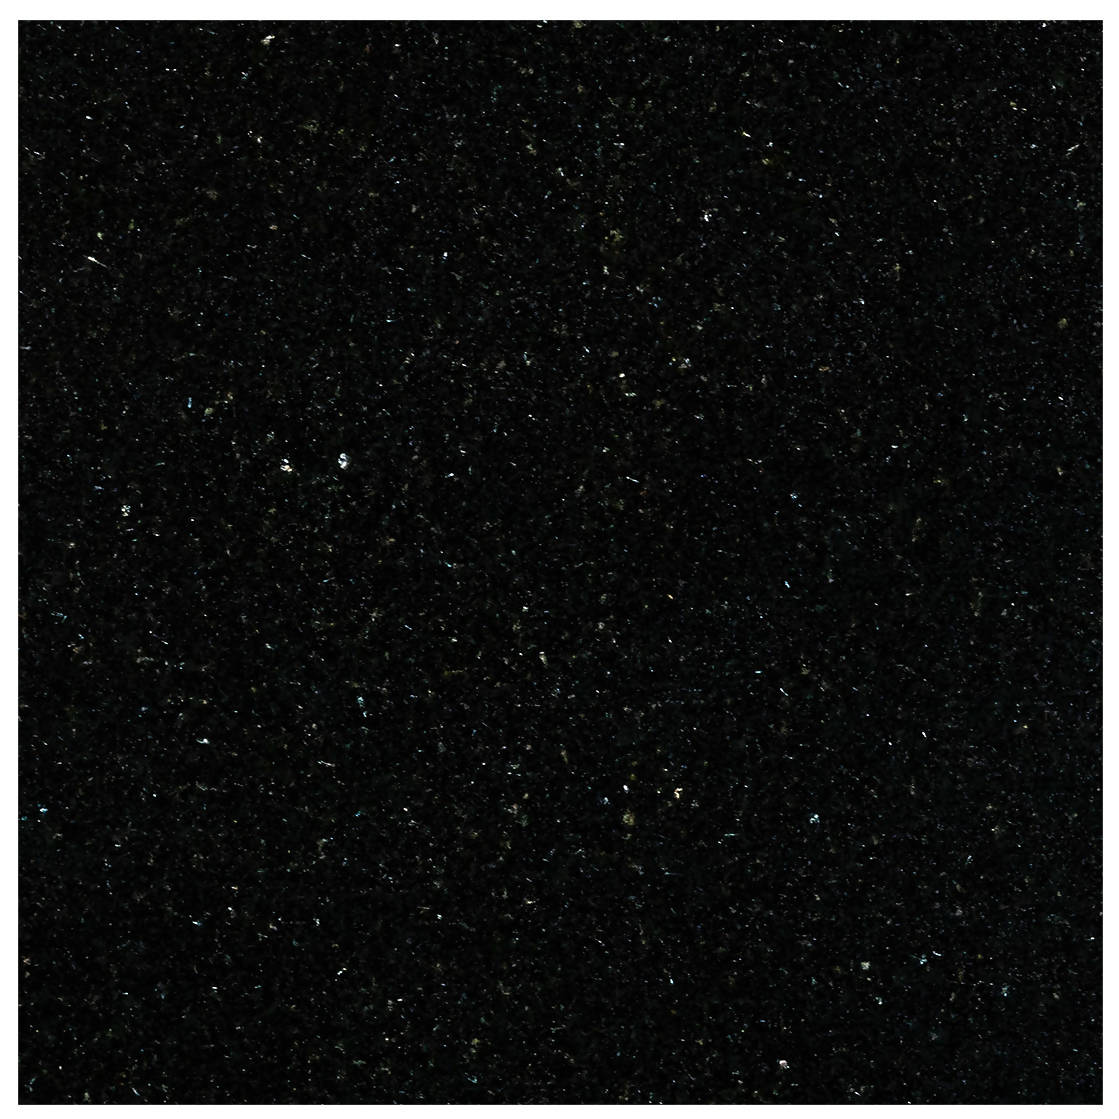 ABSOLUTE BLACK EXTRA PREMIUM GRANITE,Granite,Work-Tops,www.work-tops.com